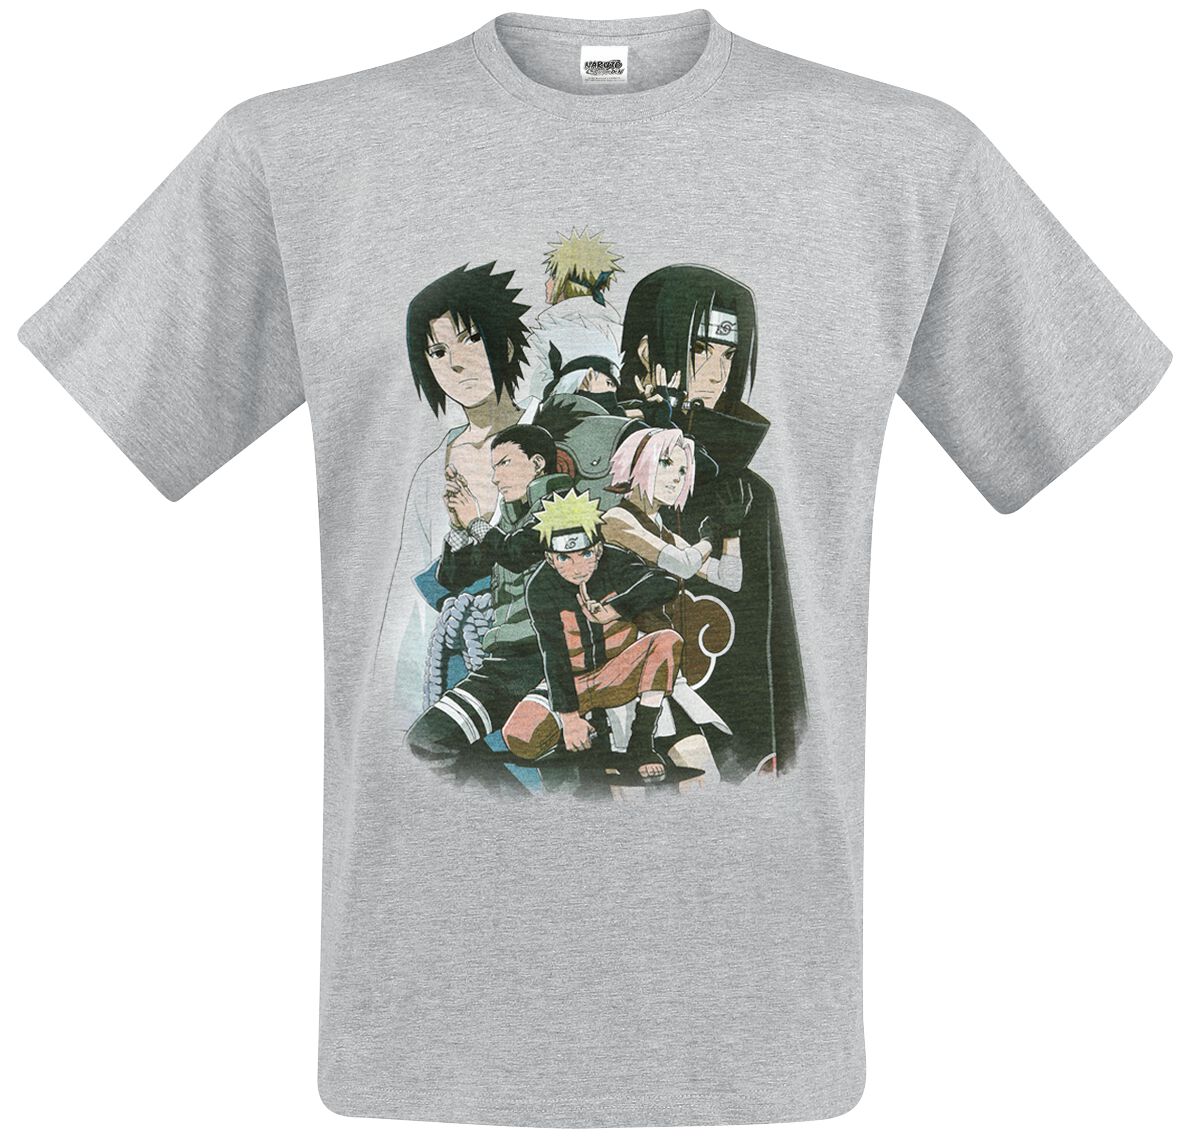 Naruto Shippuden - Group T-Shirt grau meliert in M